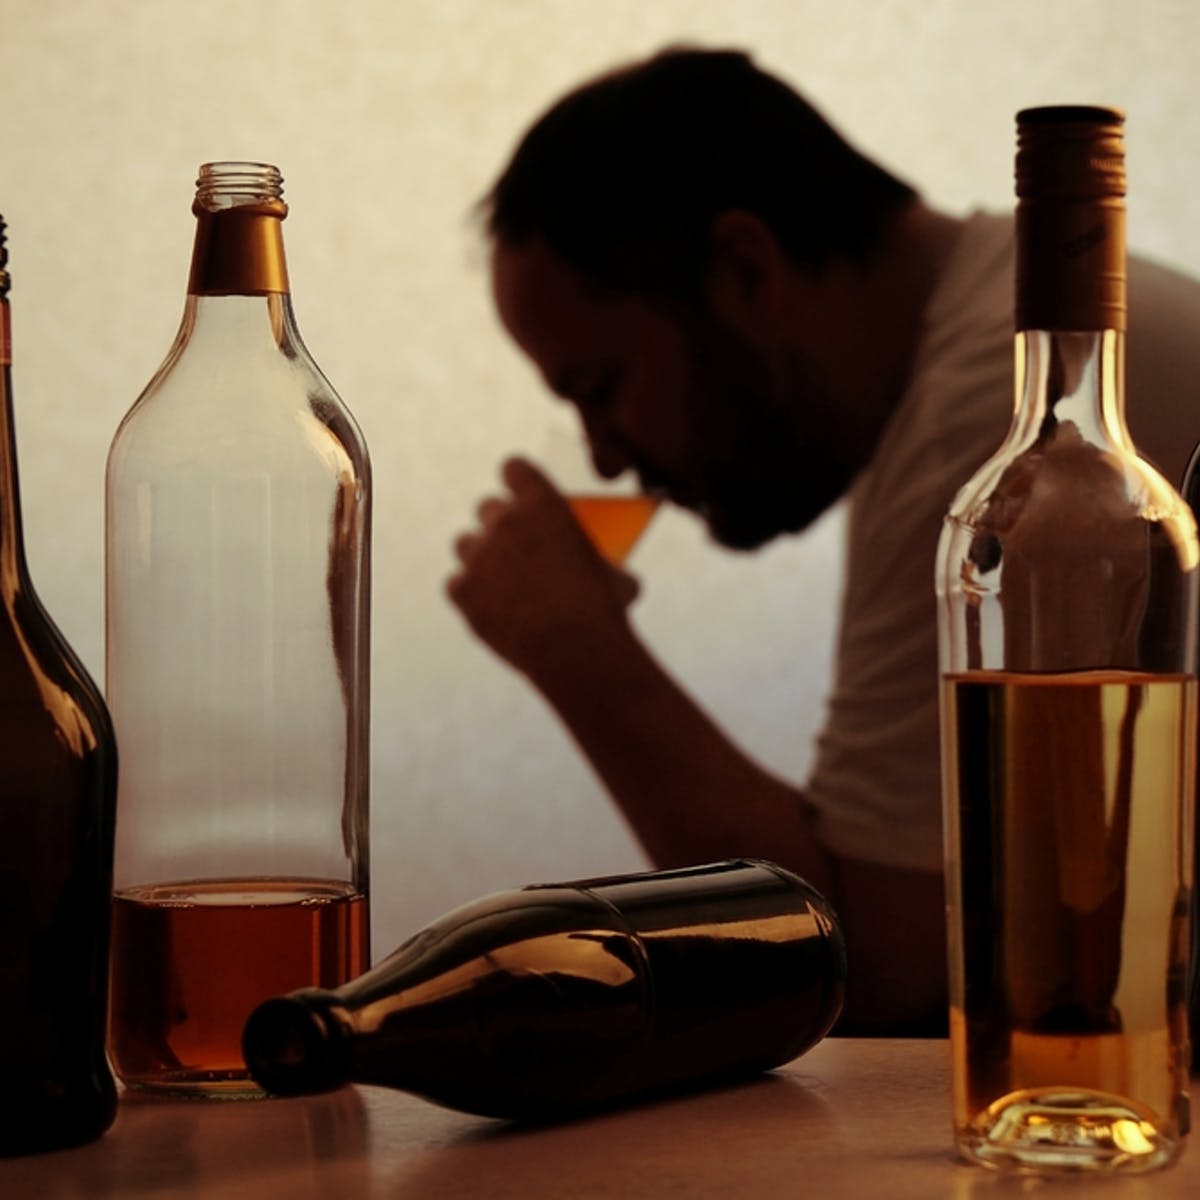 کمتر الکل مصرف کنید
درمان خانگی و طبیعی فشار خون بالا